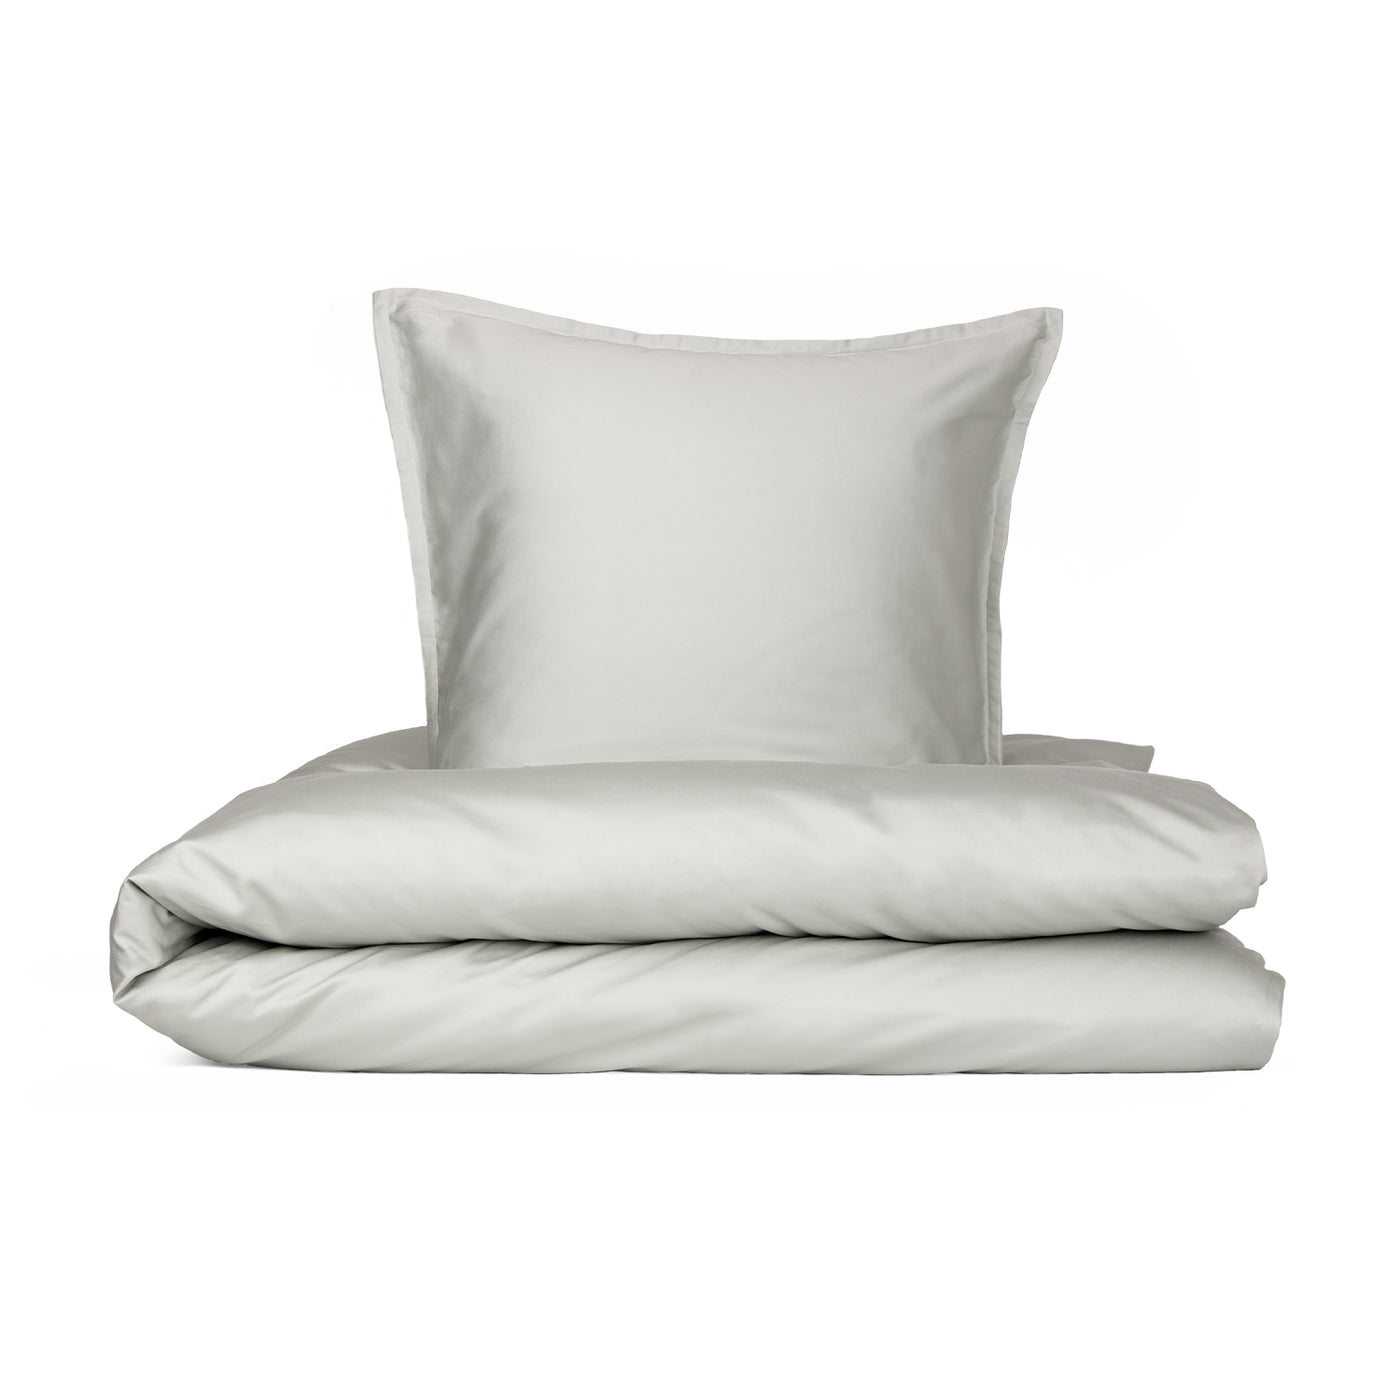 Produktbillede af Enkelt sengetøj Egyptisk bomuld sand/grå